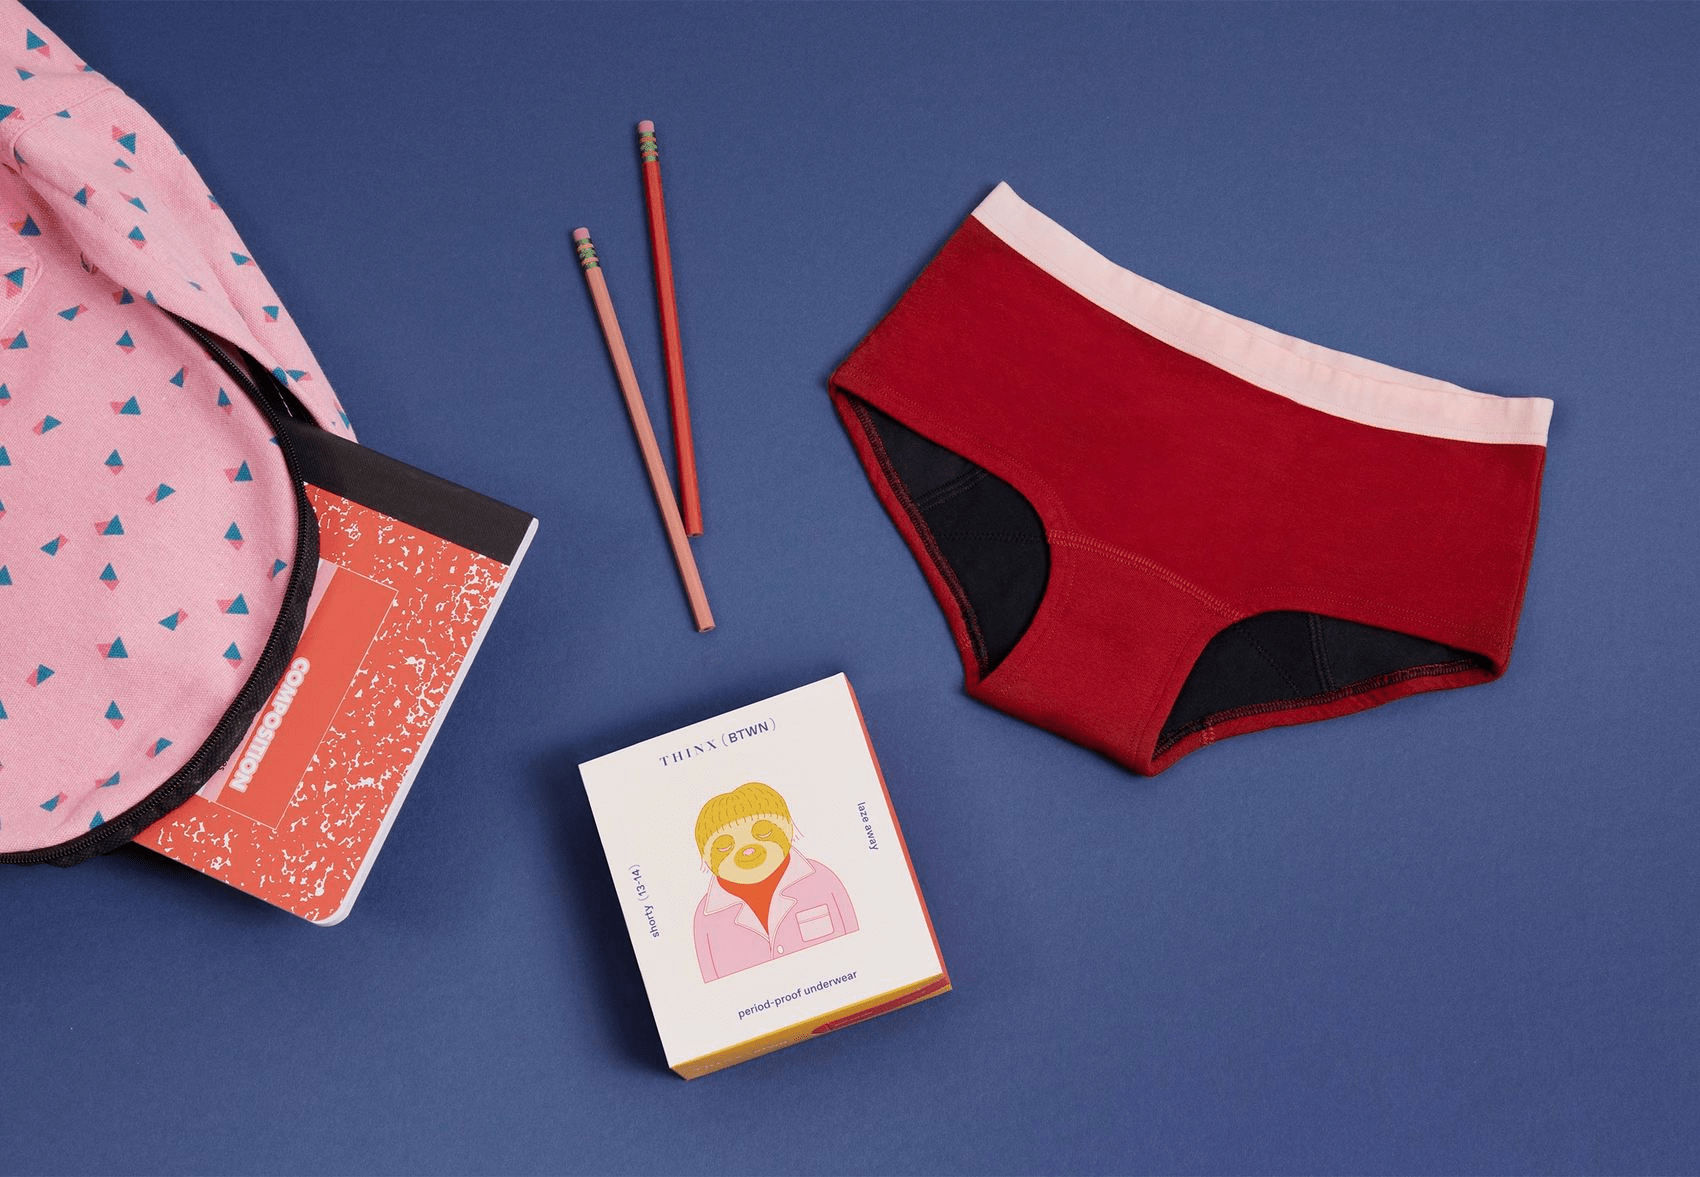 Thinx BTWN Teen Period Underwear - Fresh Start Period Kit for Teen